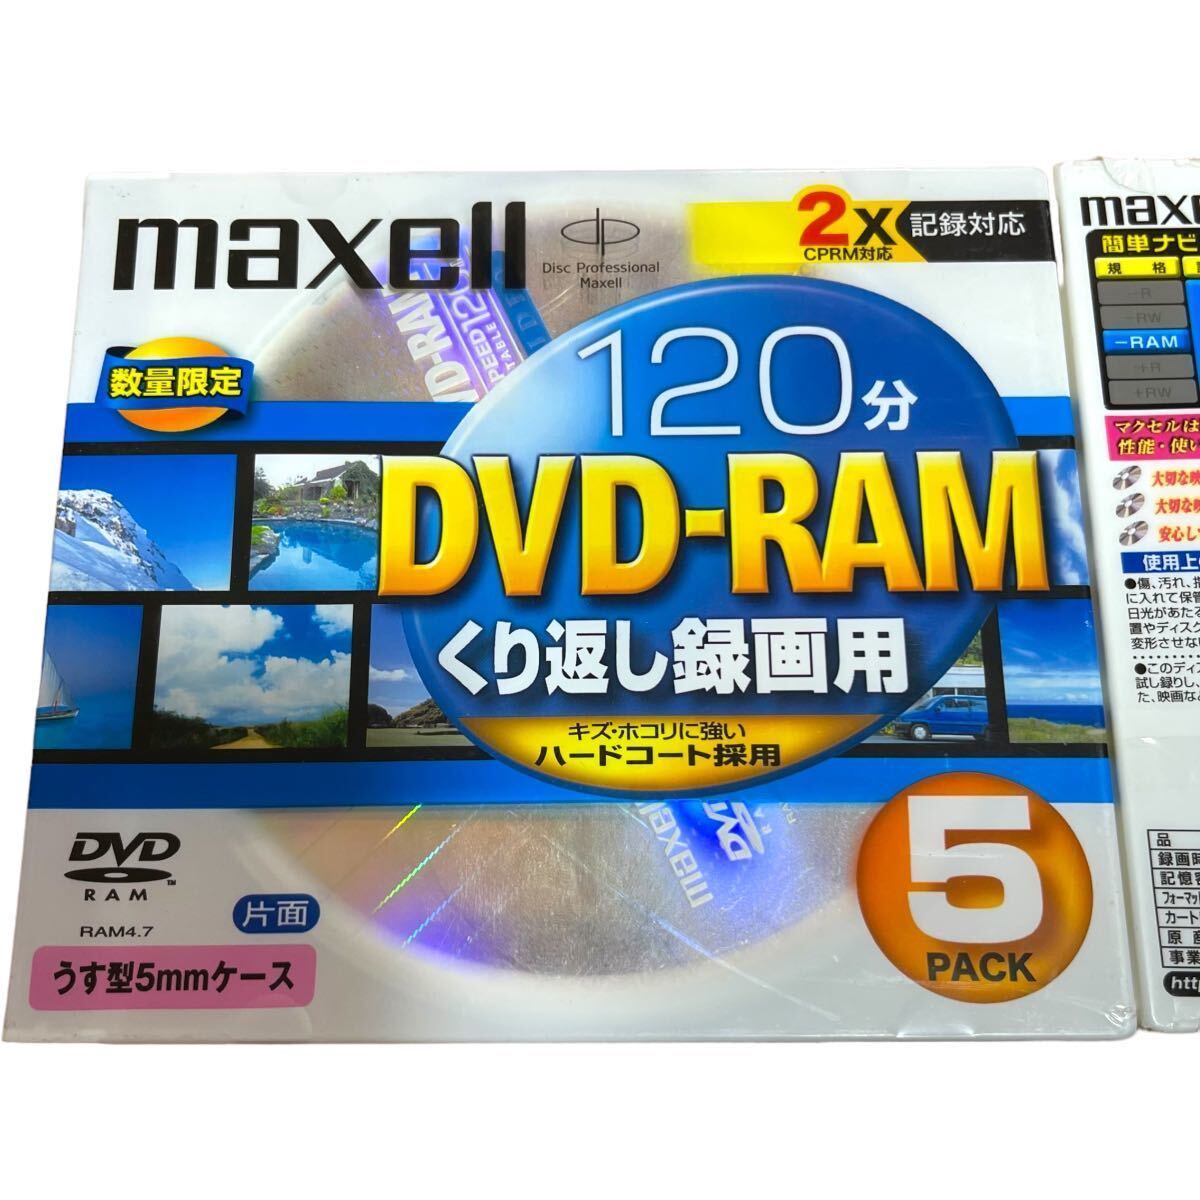 未開封 maxell マクセル DVD-RAM 4.7GB 片面120分 うす型5mmケース 計10枚 くり返し録画用 2X記録対応 CPRM対応 ハードコート DRM120STの画像3